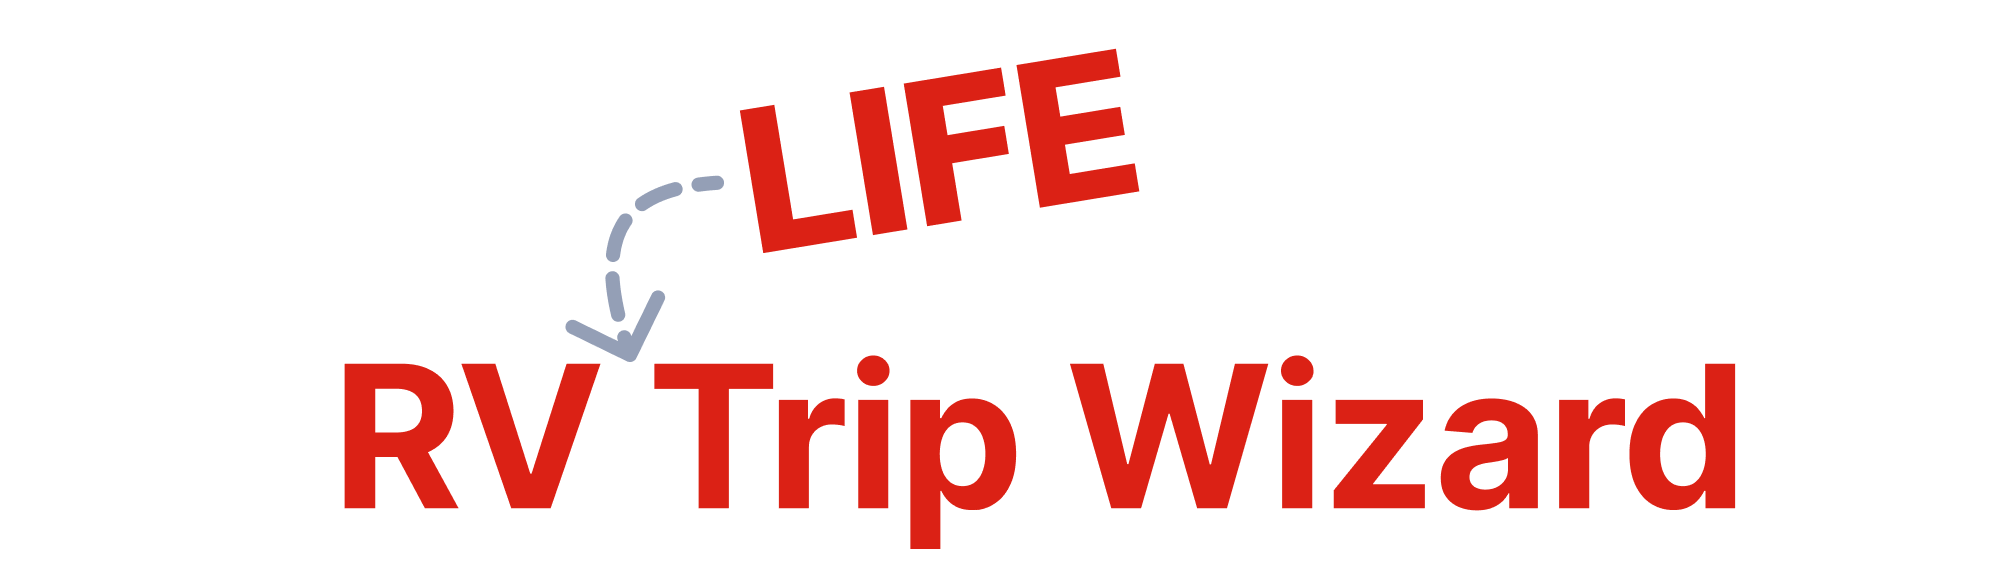 New RV LIFE Trip Wizard logo